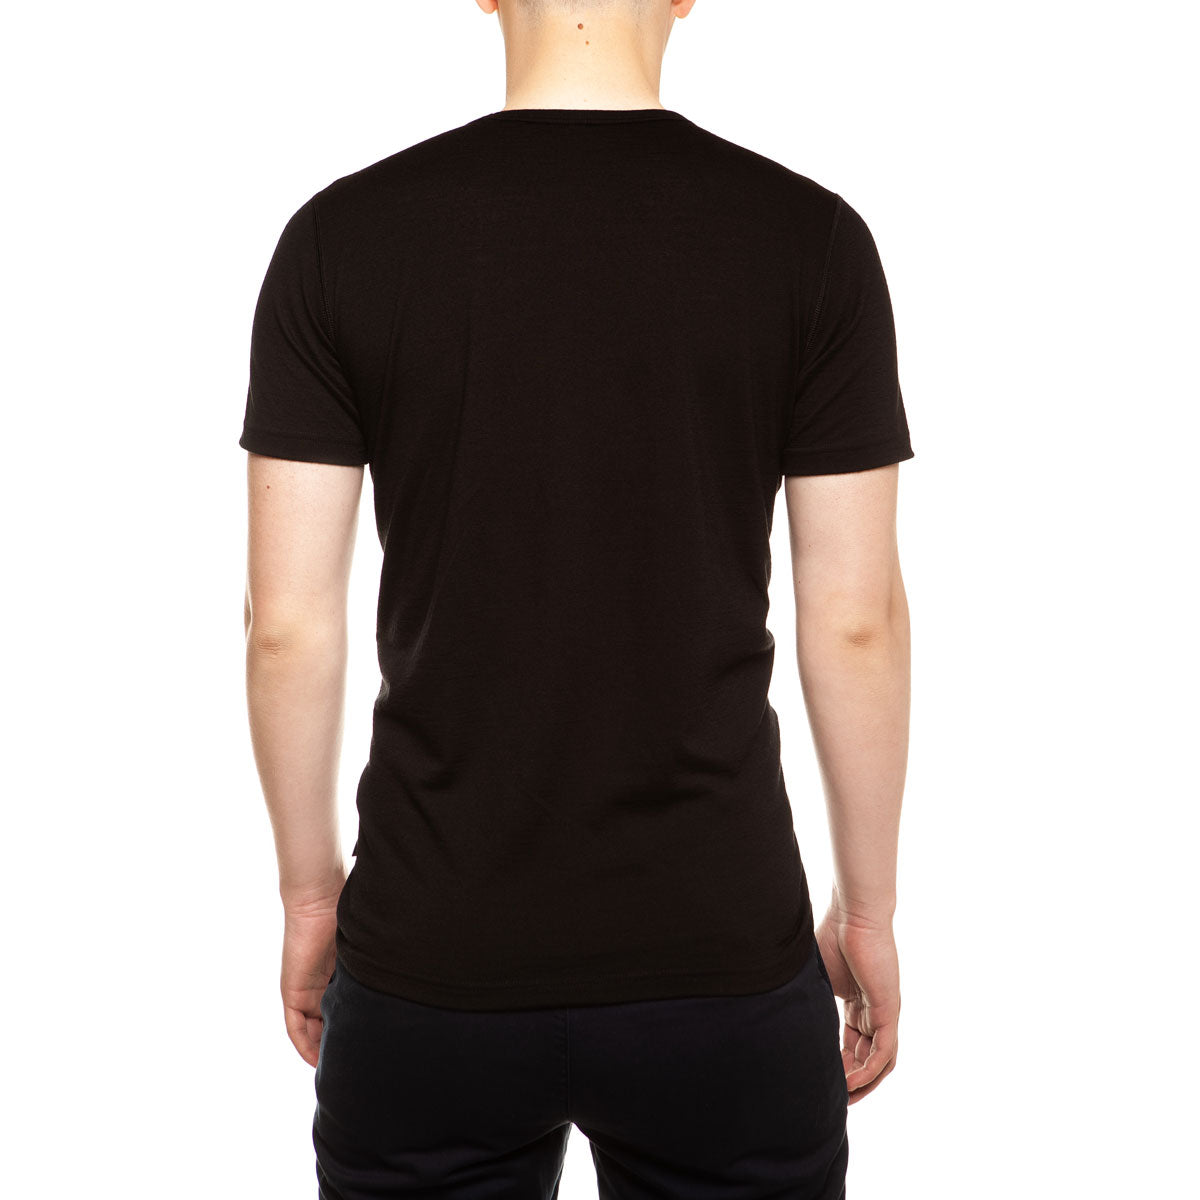 MENIQUE 100% Merino Wool Mens Shirt Black